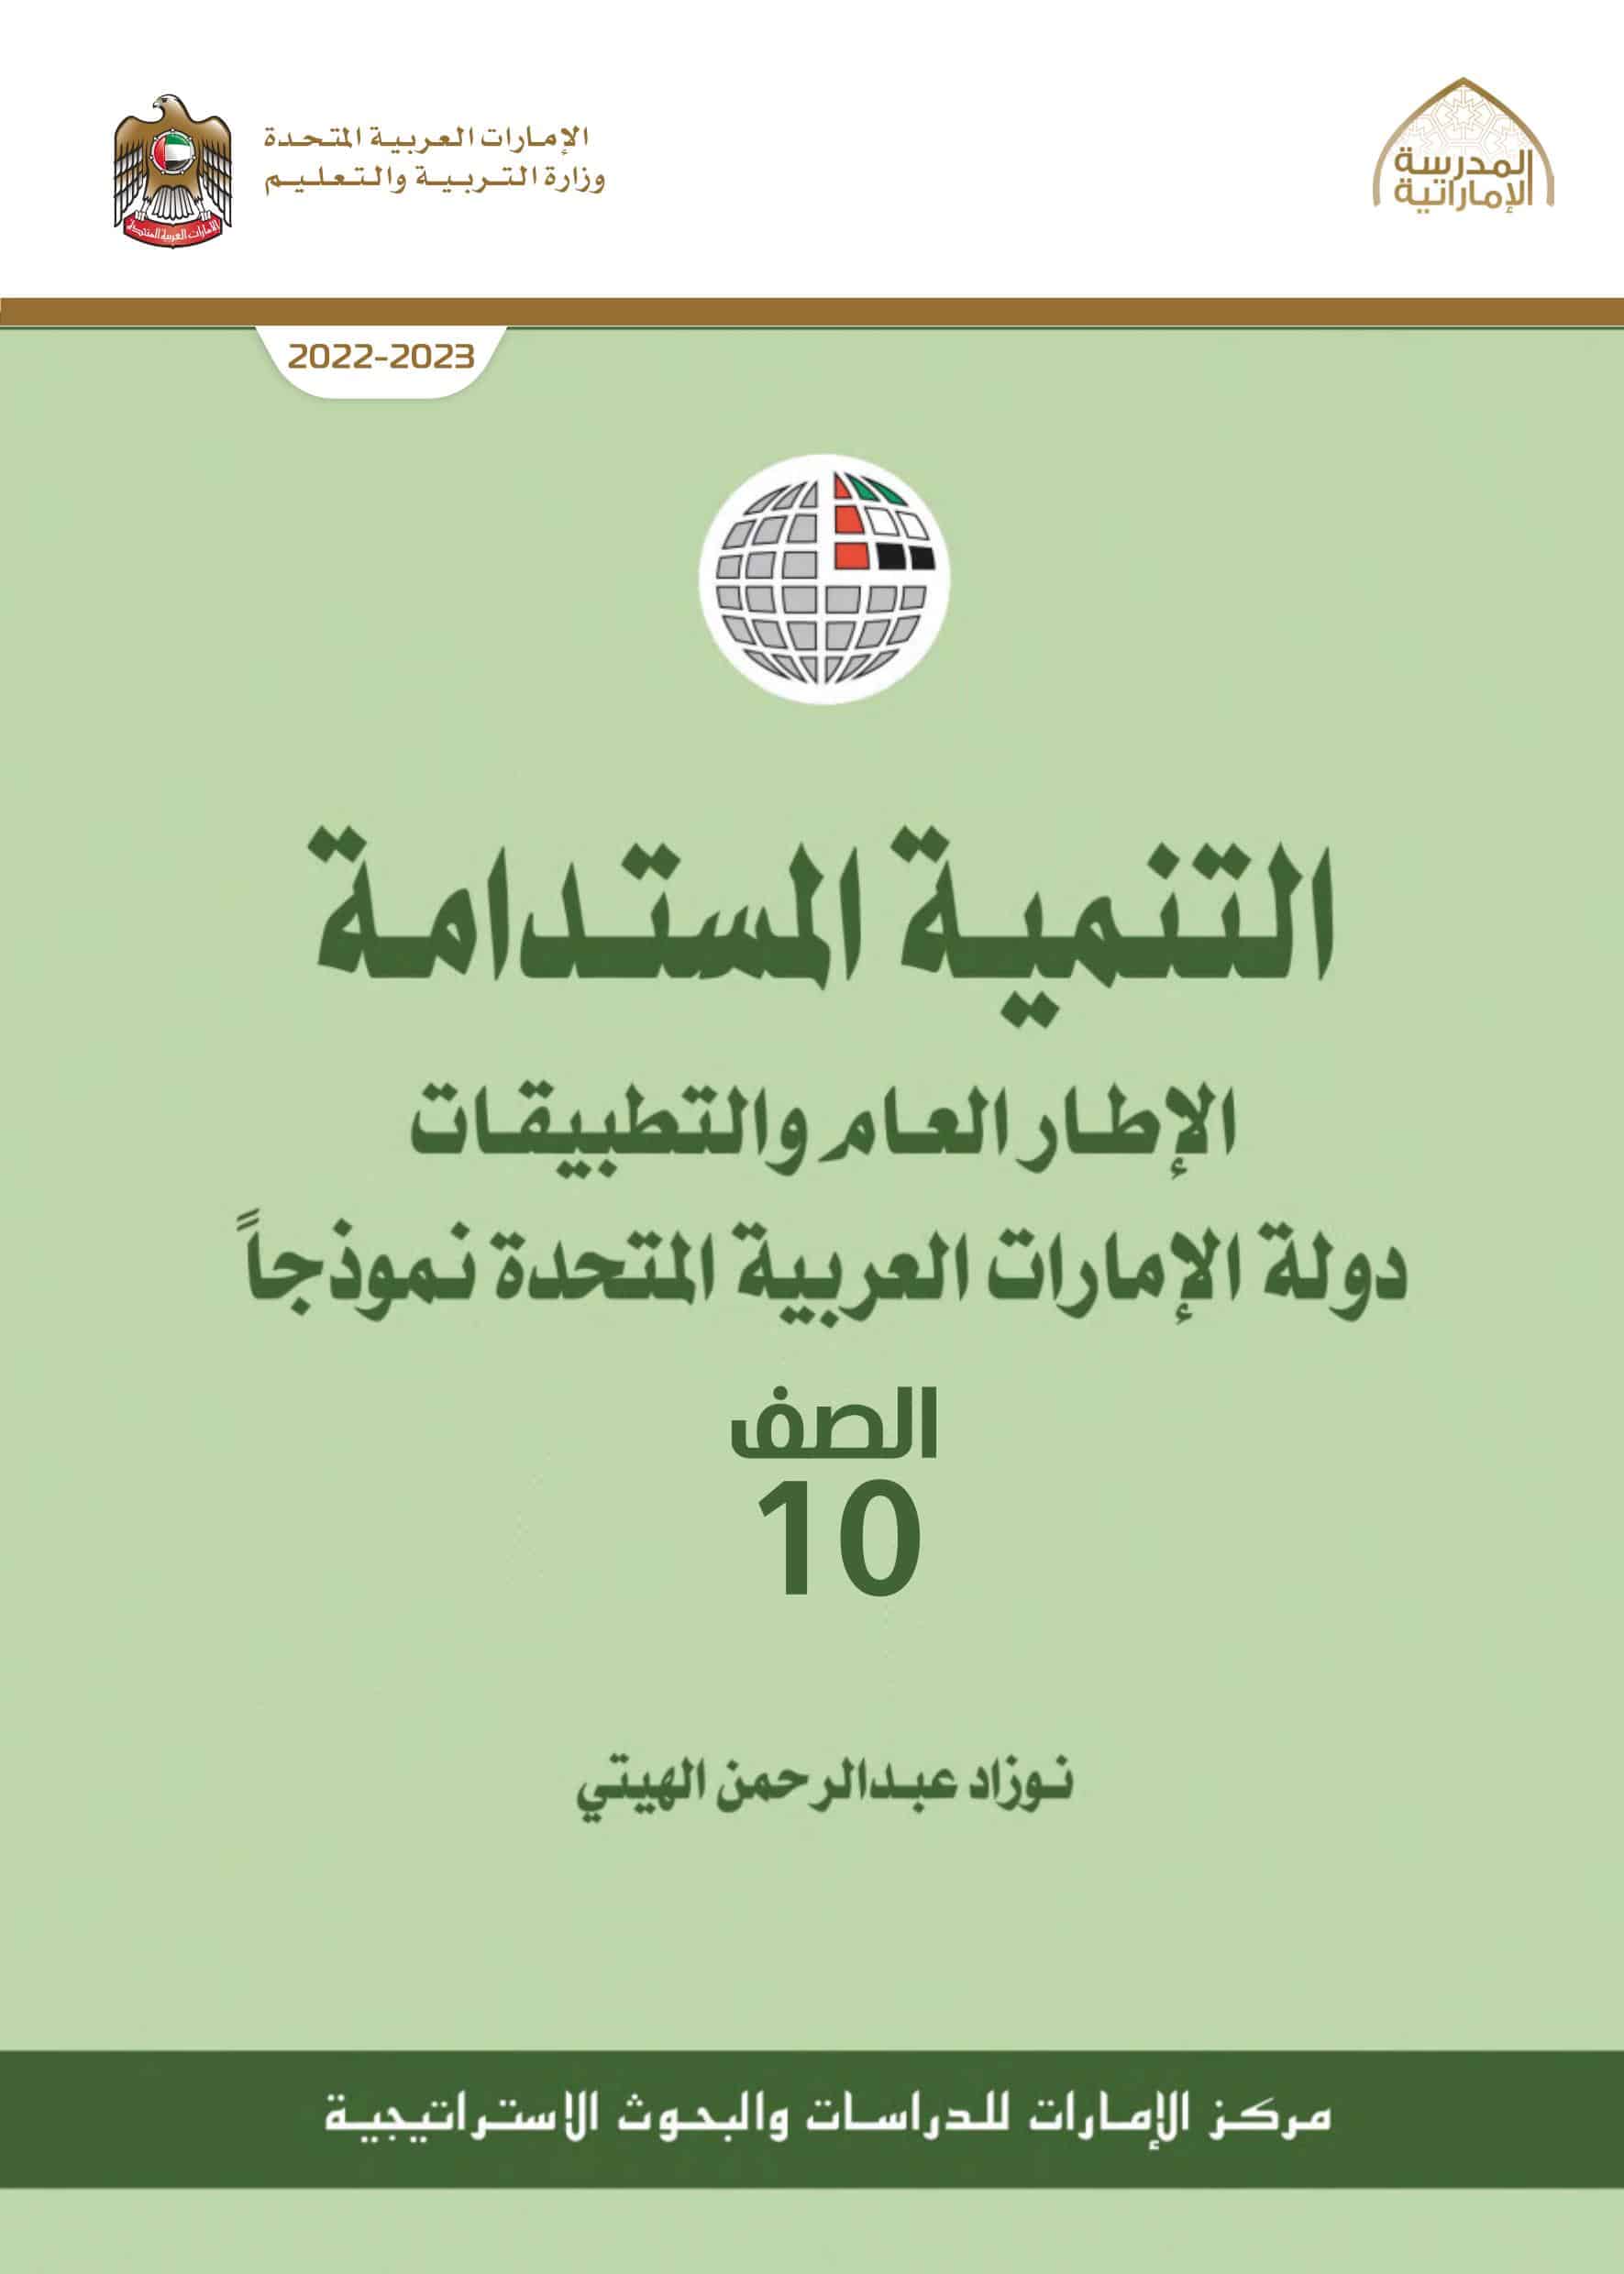 كتاب التنمية المستدامة الدراسات الإجتماعية والتربية الوطنية الصف العاشر 2022-2023